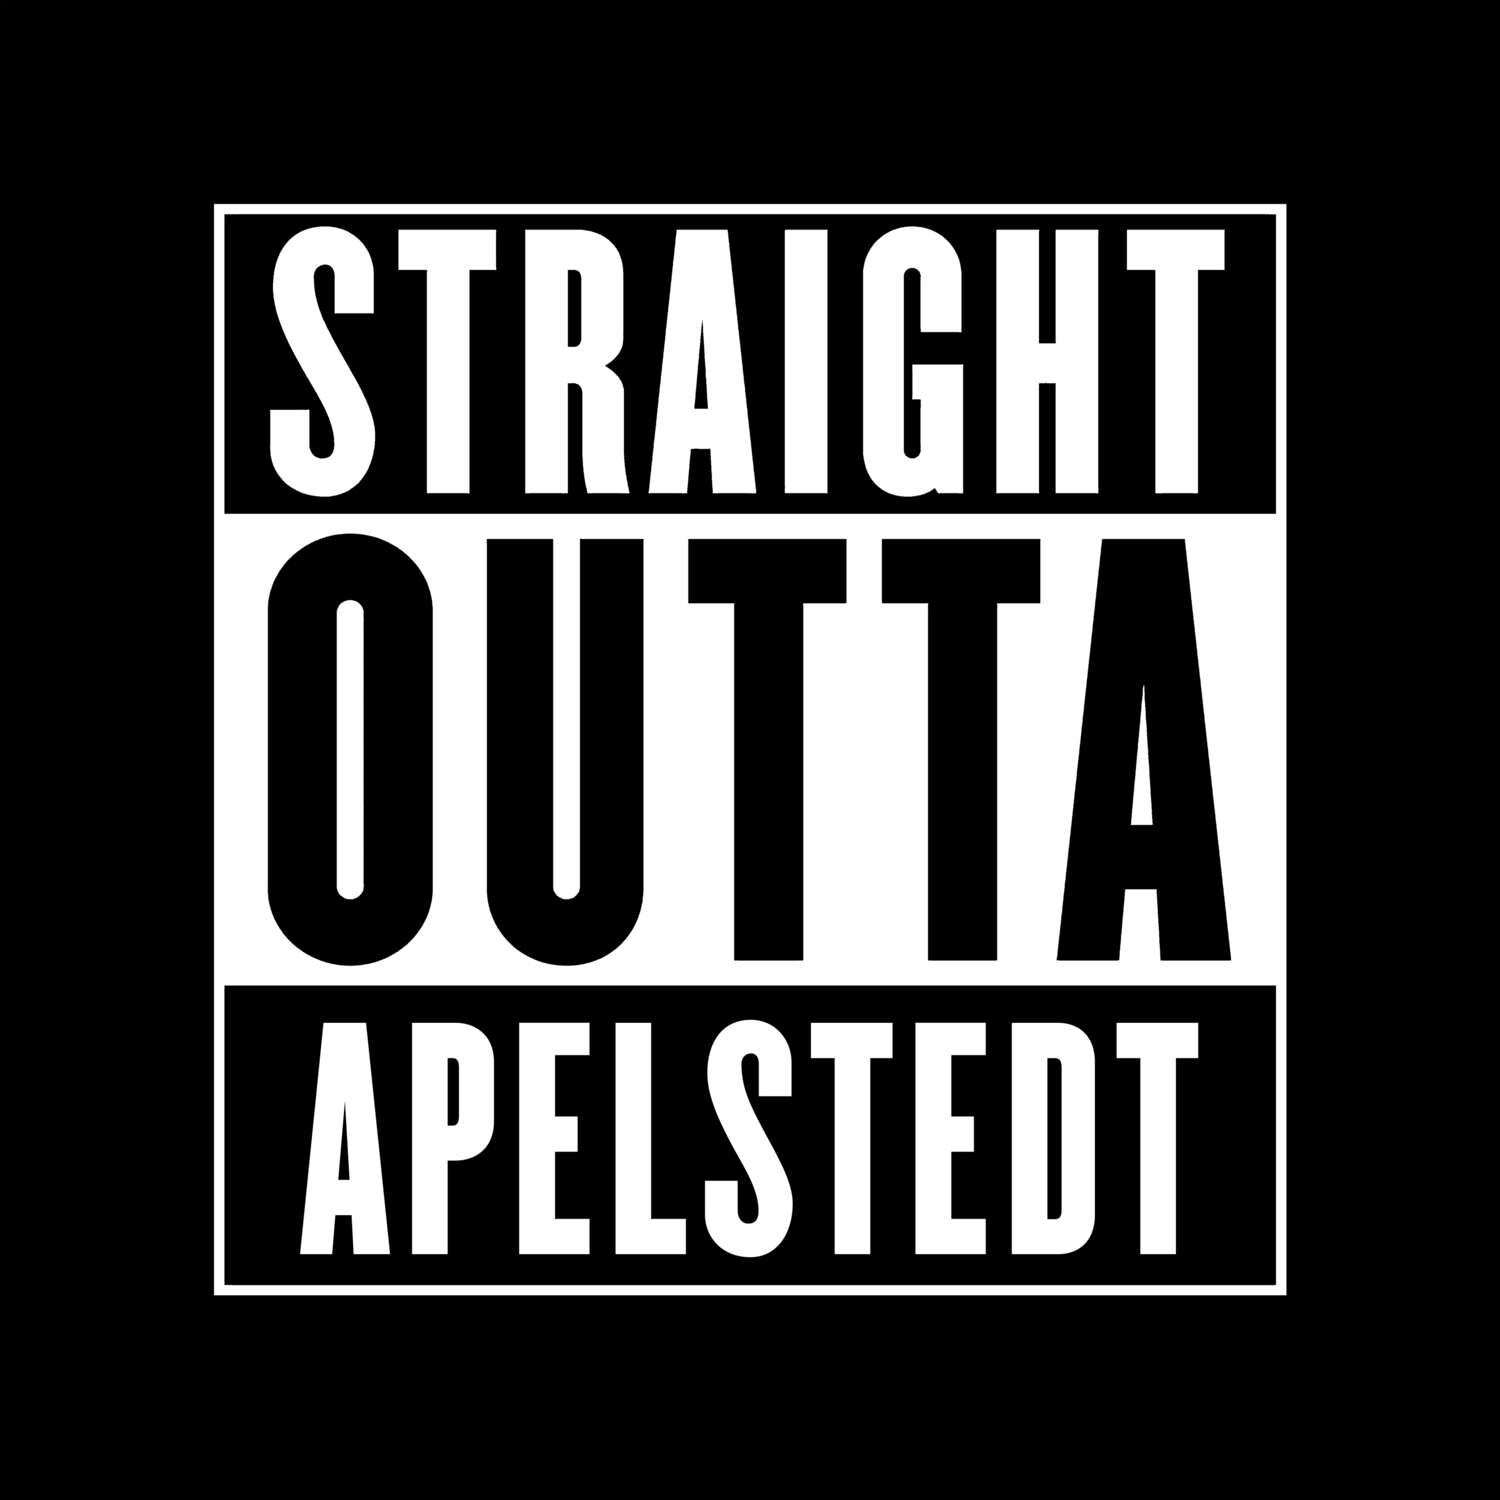 Apelstedt T-Shirt »Straight Outta«